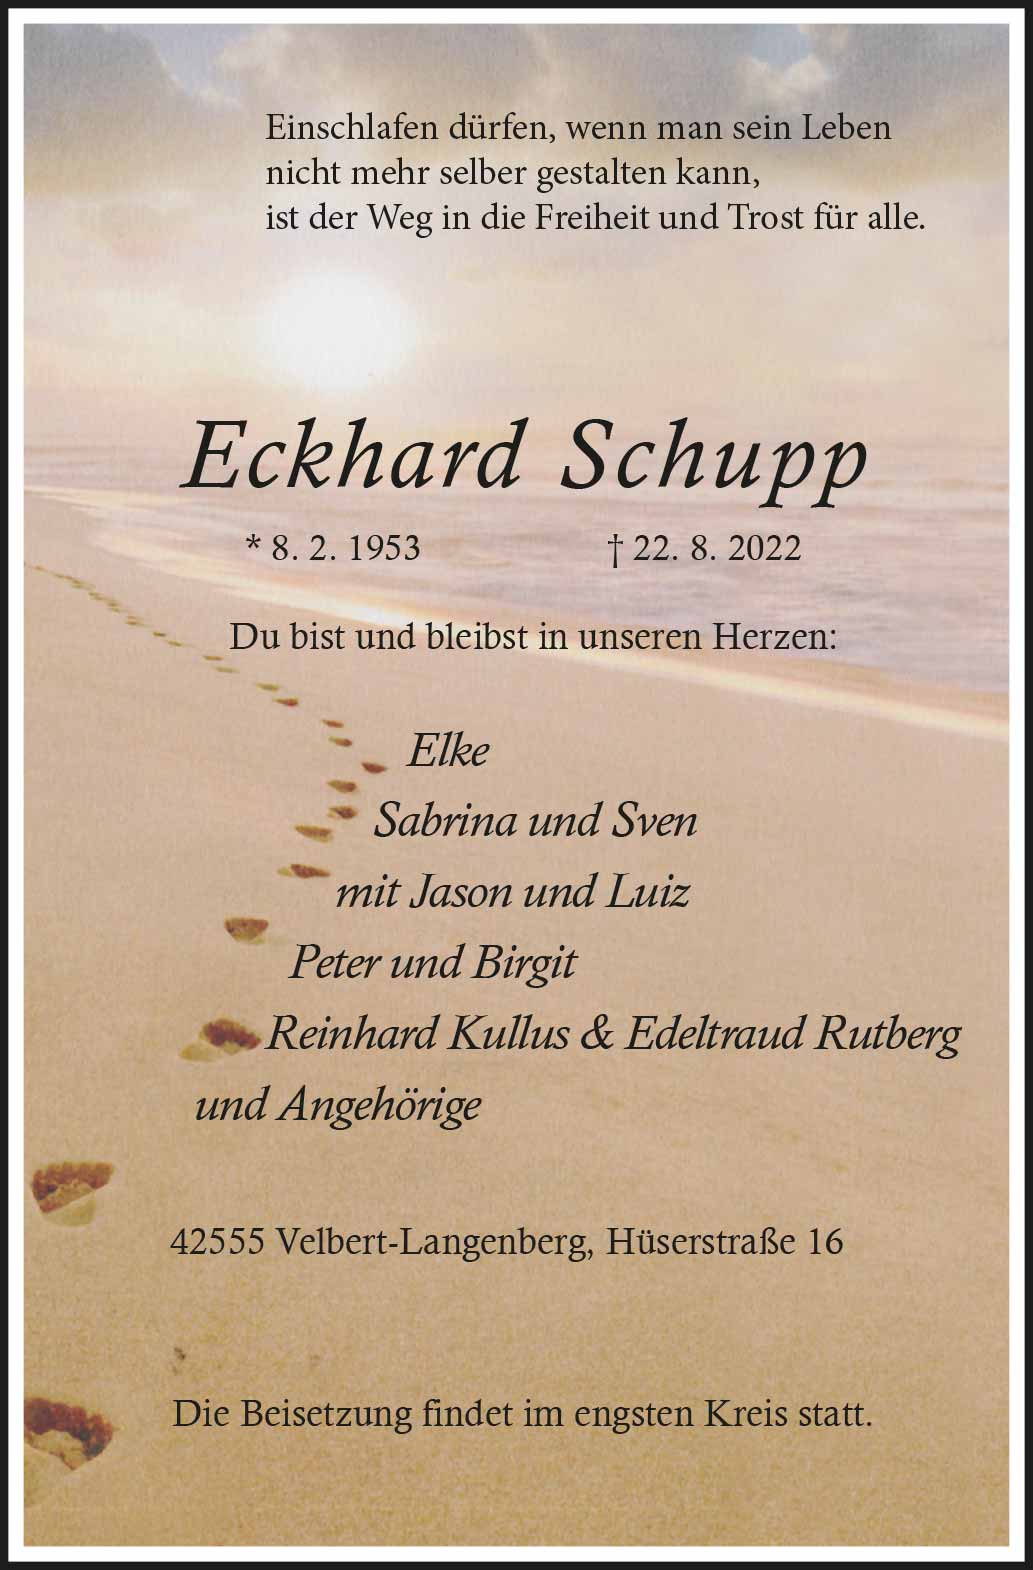 Eckhard Schupp † 22. 8. 2022